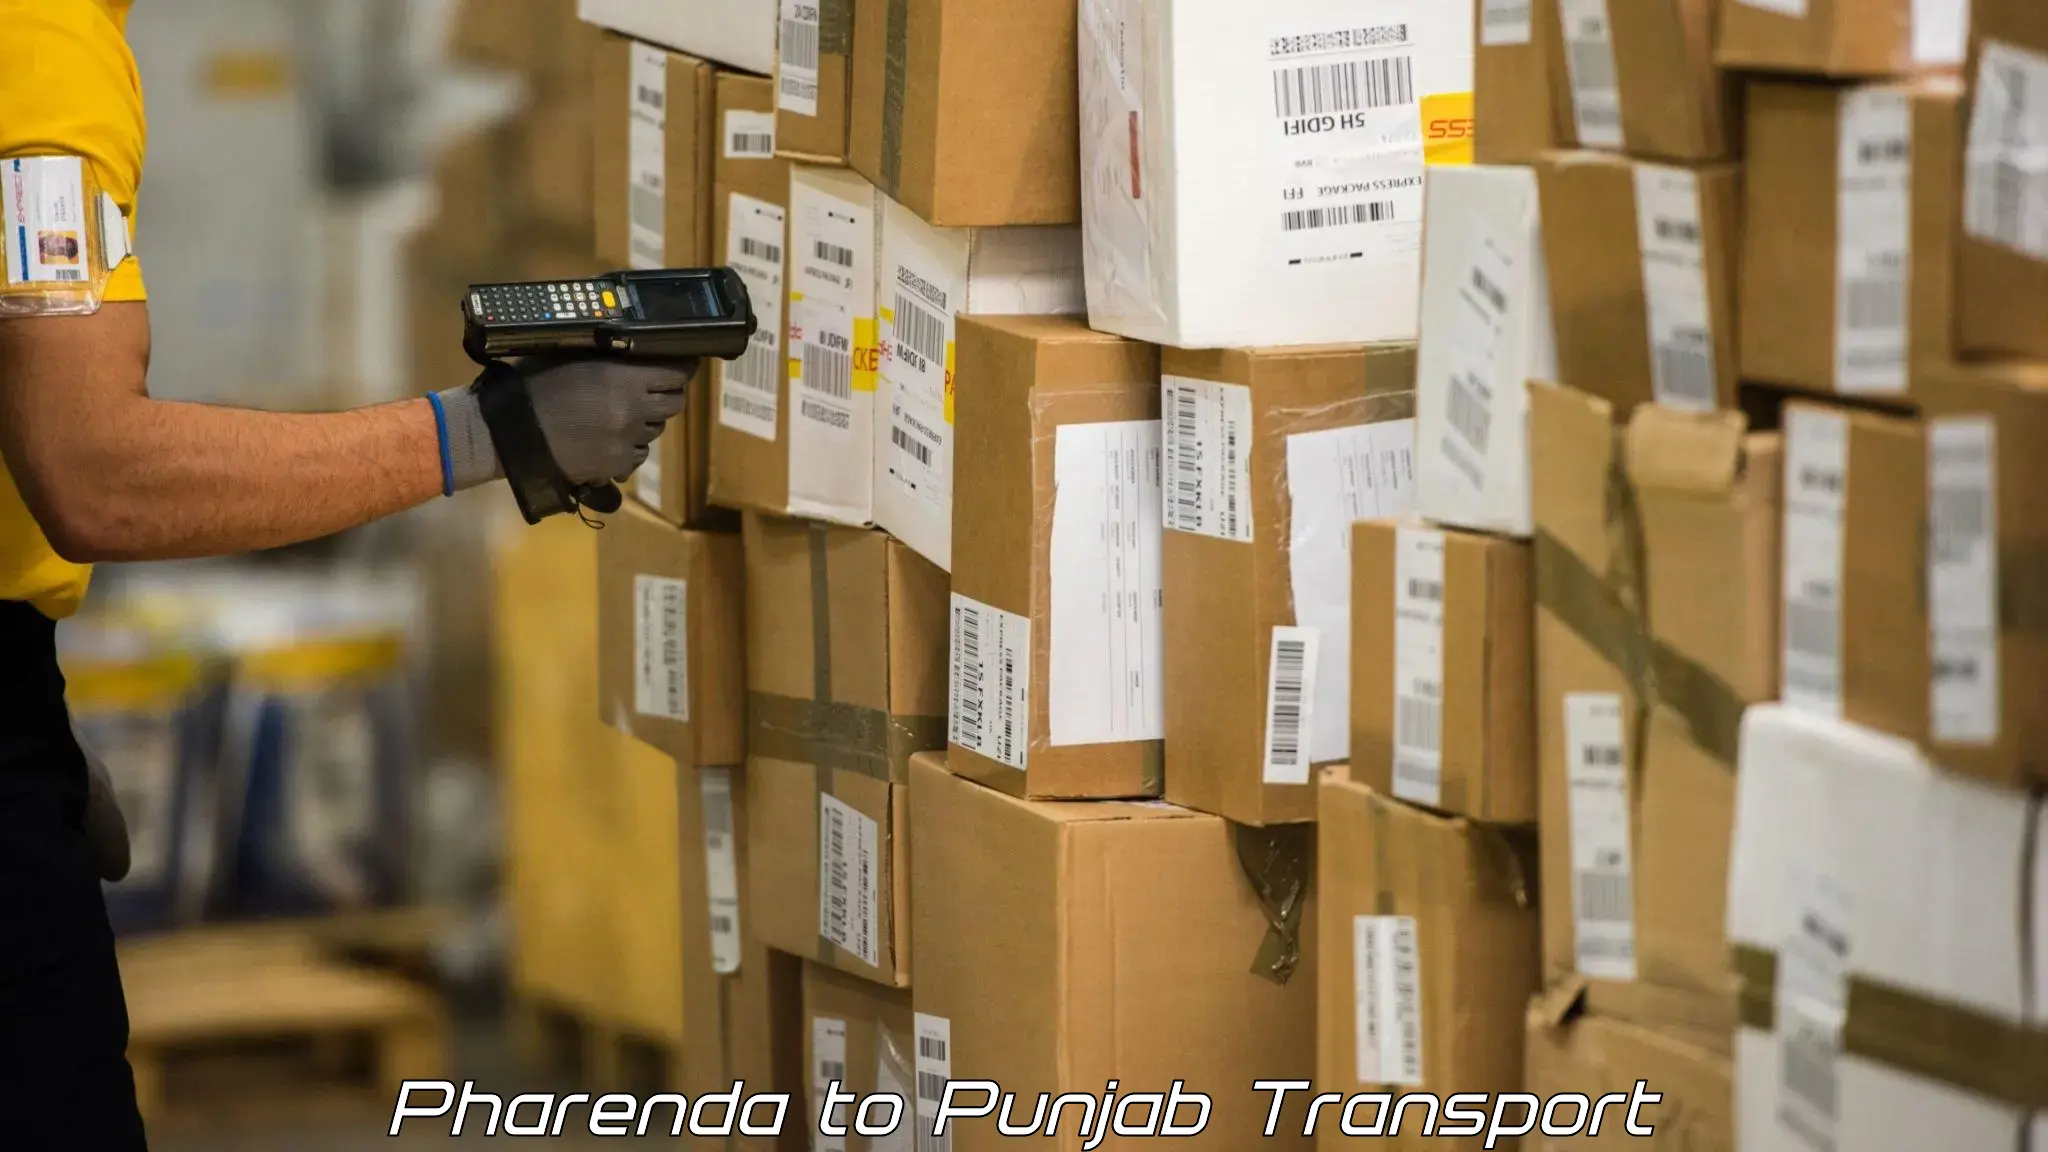 Land transport services in Pharenda to Punjab